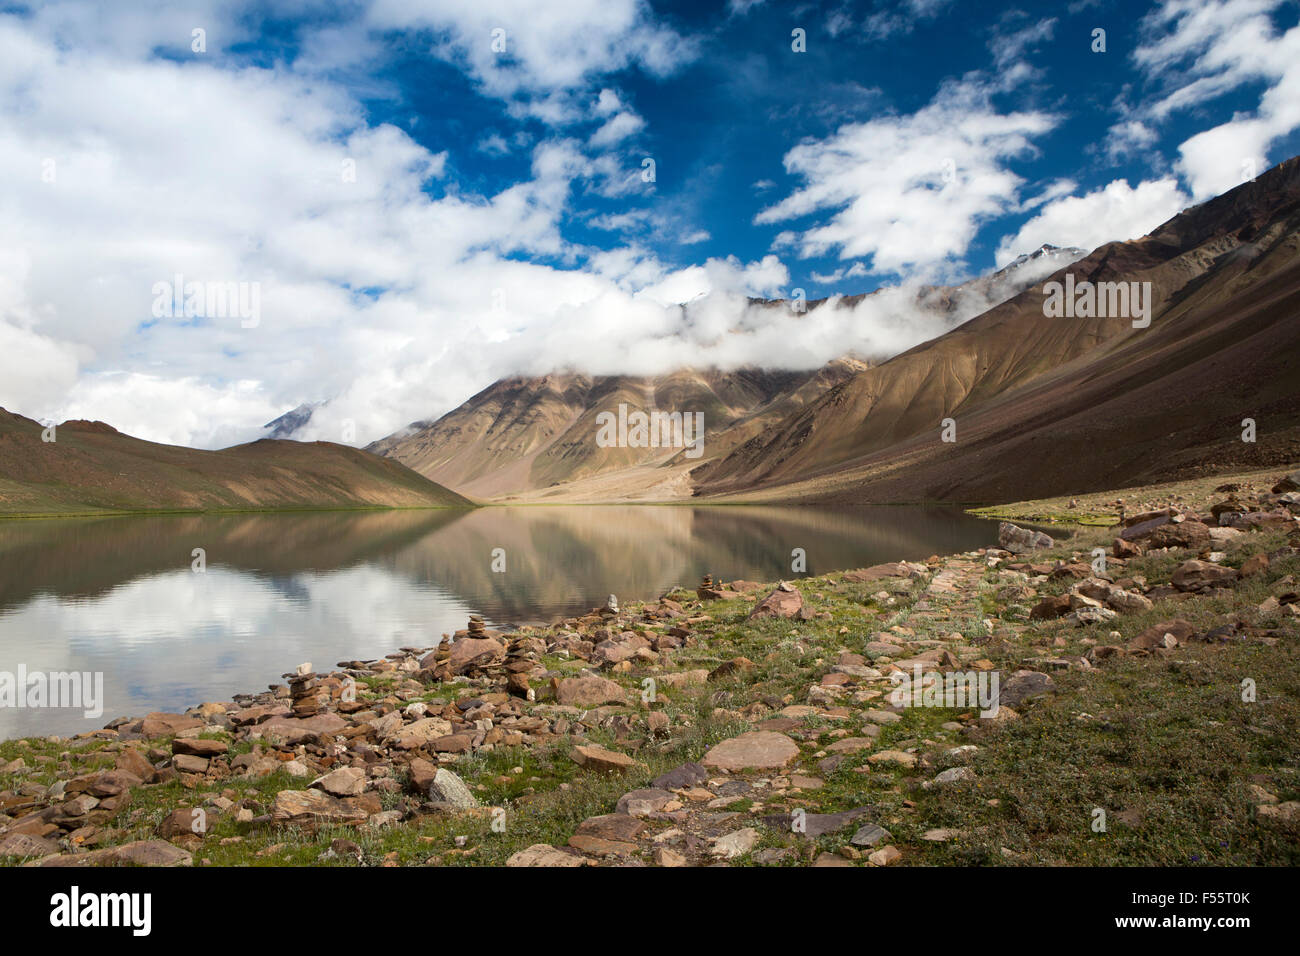 India, Himachal Pradesh, Spiti, Chandra, Taal Luna Piena lago, la mattina presto, pietra cairns sulla riva del lago Foto Stock